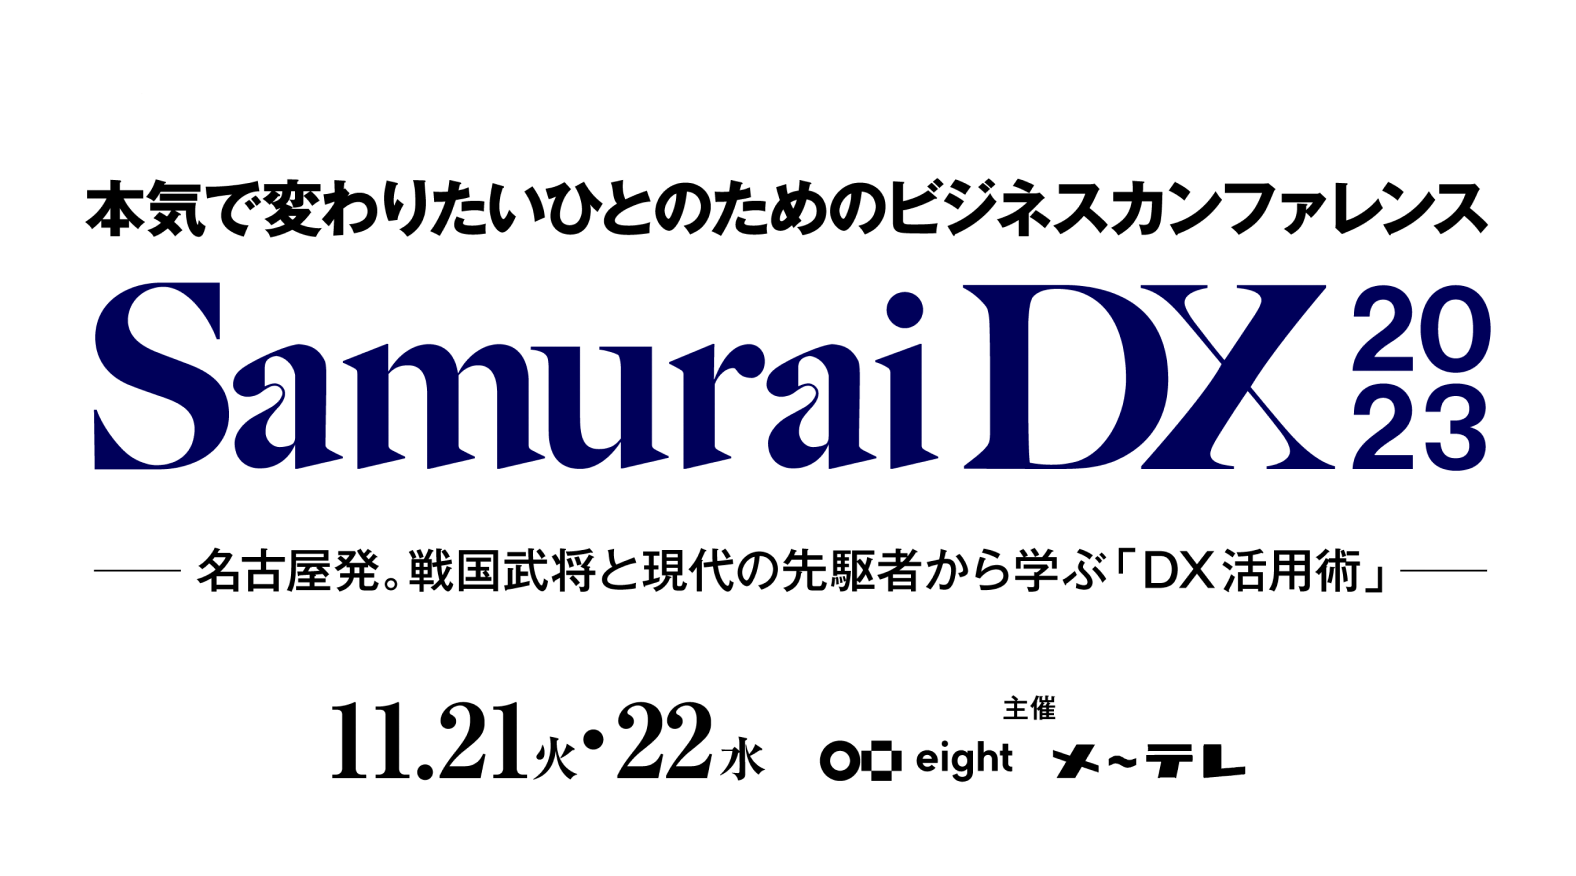 SamuraiDX 2023 名古屋から日本へ。企業のポテンシャルを解き放つ２日間。11月21日（水）22日（木） 主催 Eight メ〜テレ